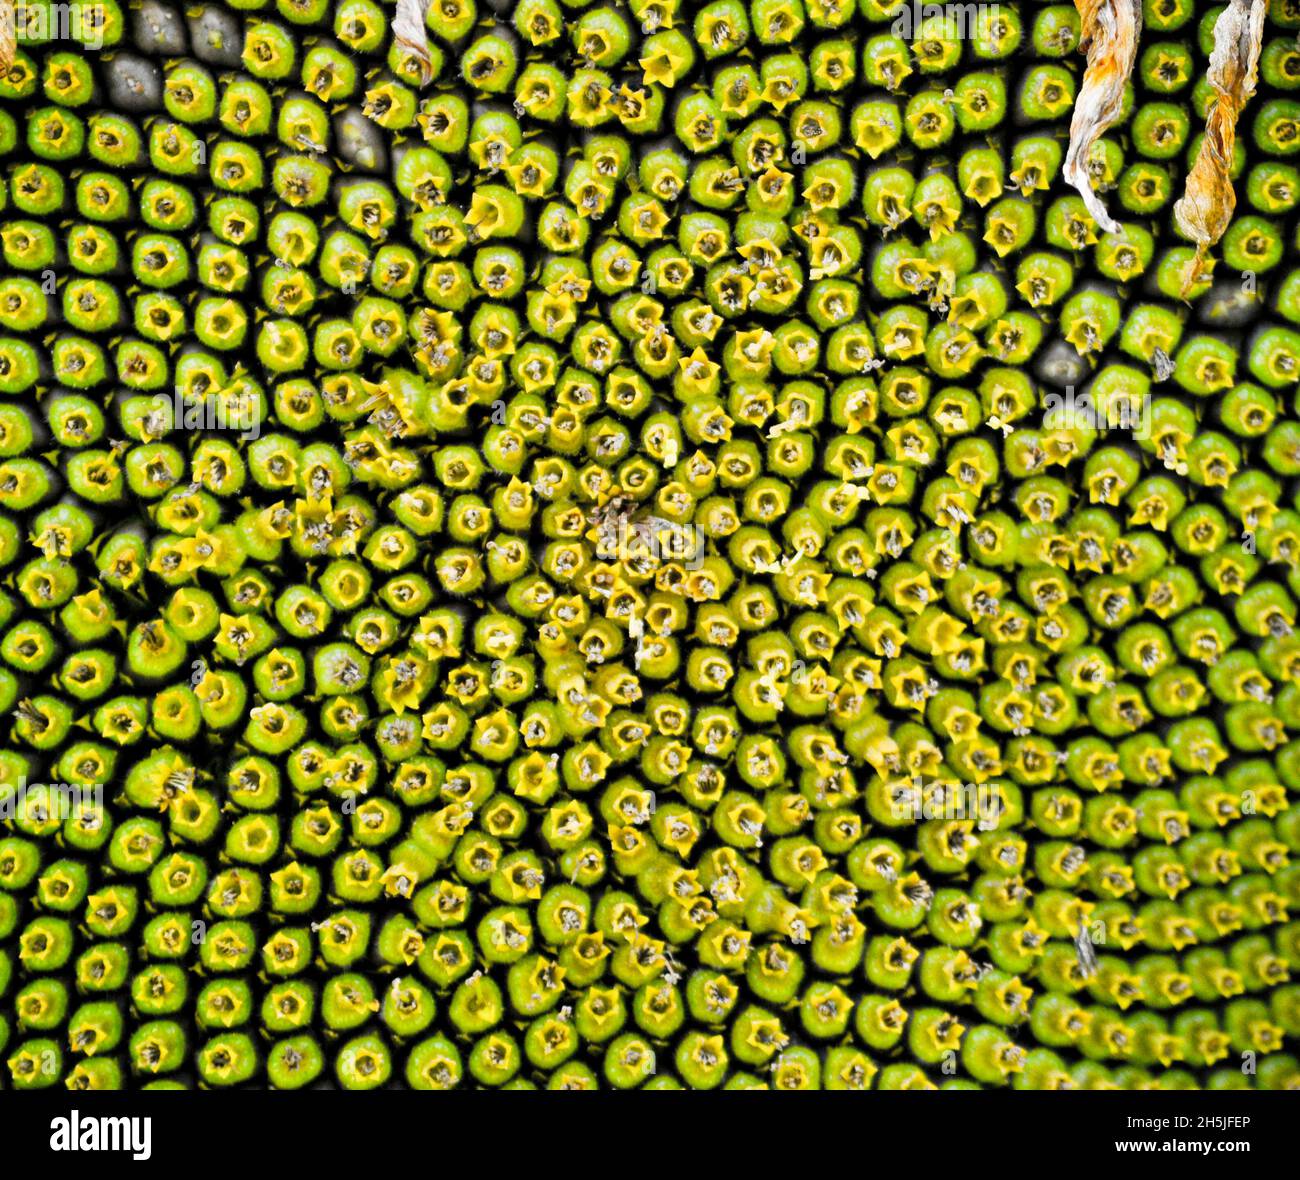 Las semillas comienzan a formarse en el centro de una cabeza de girasol creando patrones naturales impresionantes Foto de stock